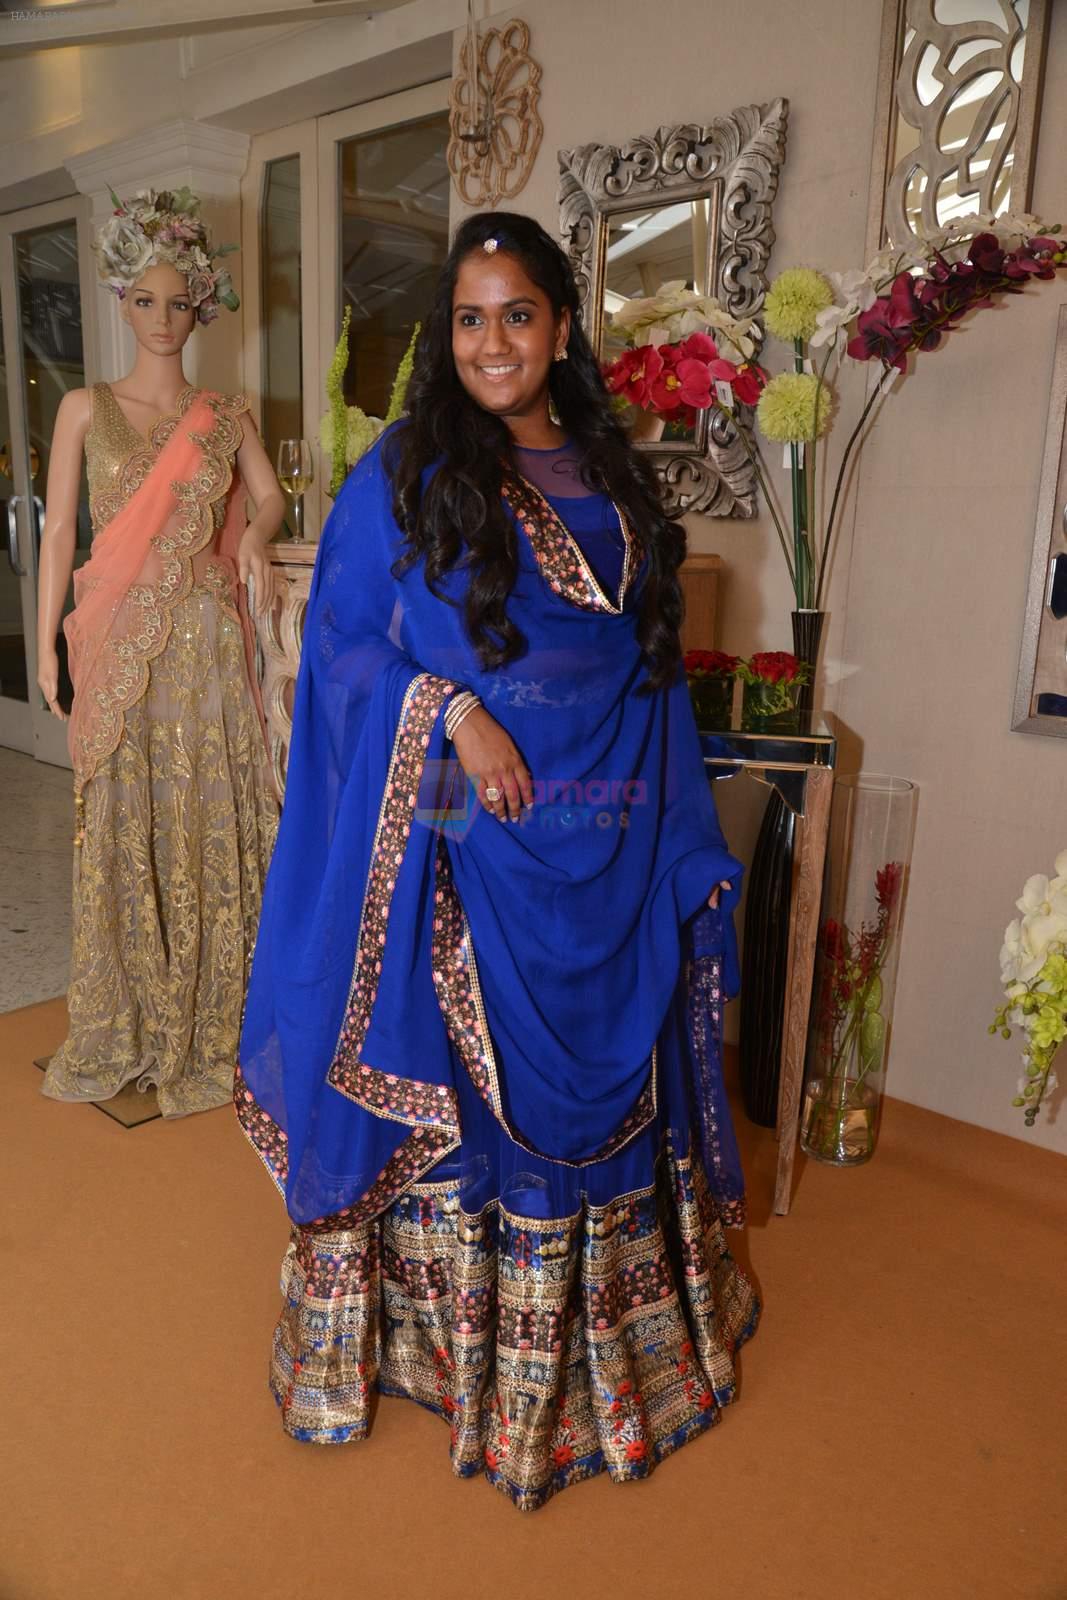 Arpita Khan at Shane Falguni Peacock preview for Bridal Asia in Tote, Mumbai on 1st Paril 2015